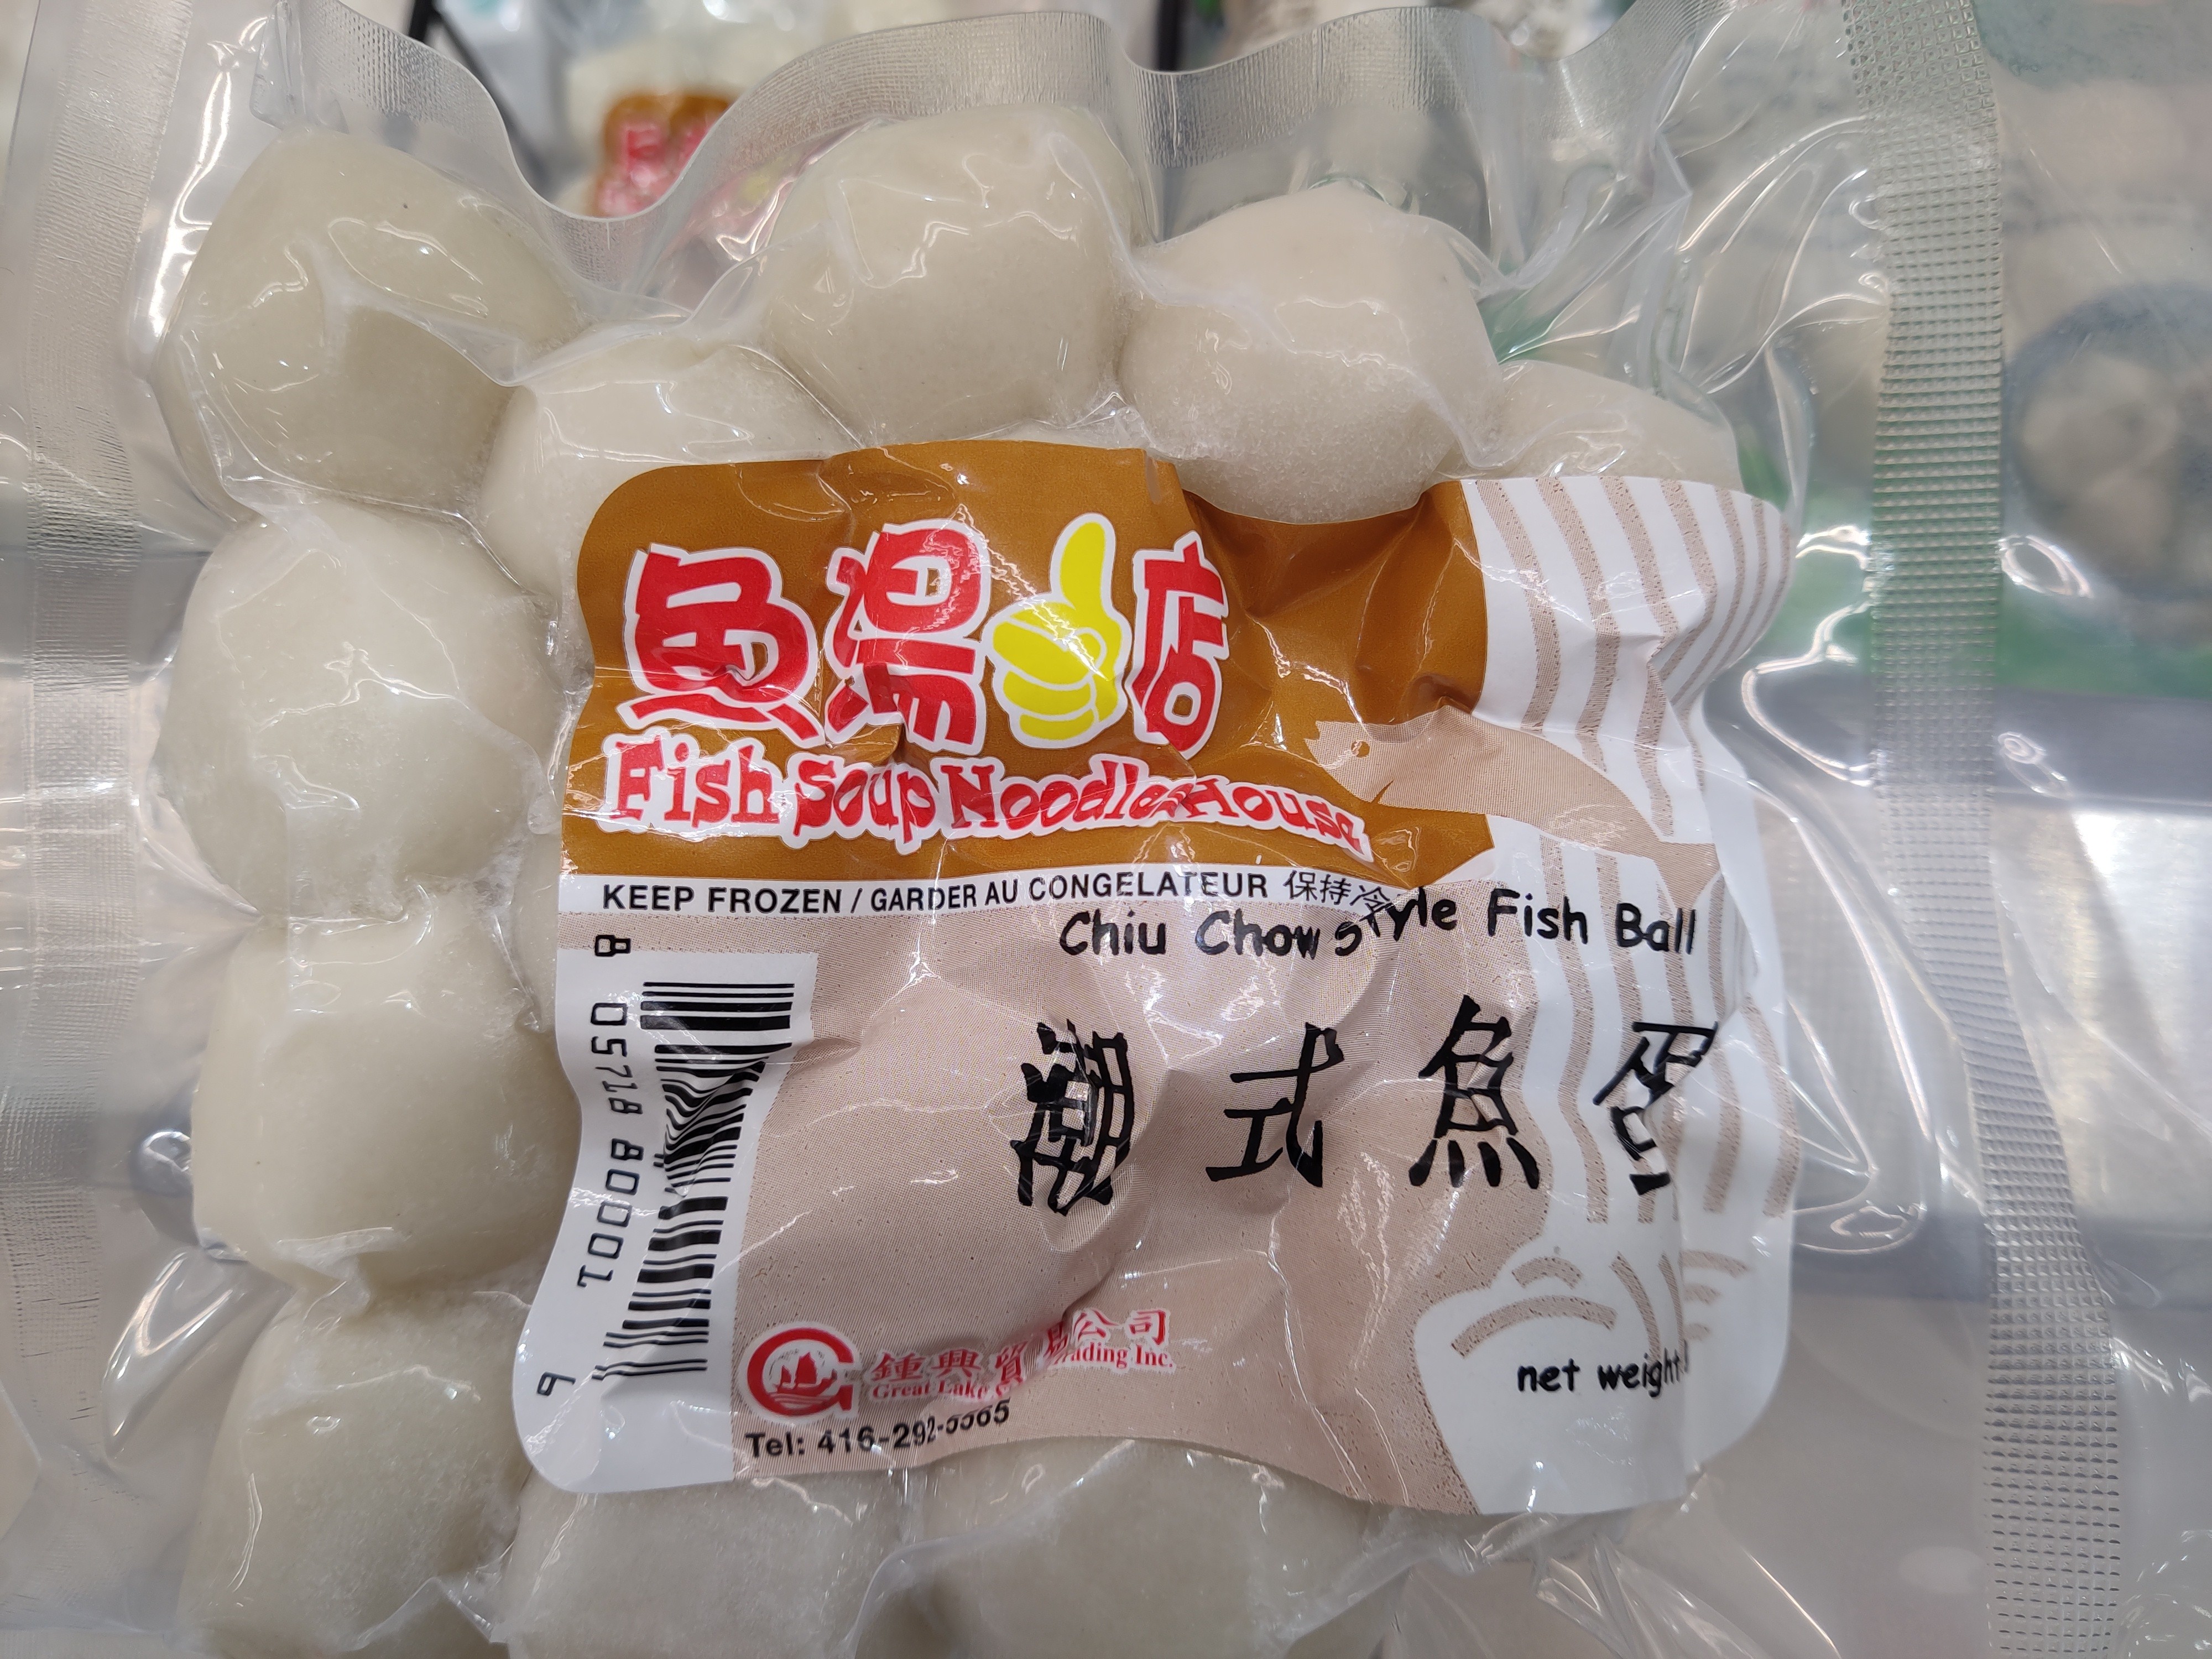 chiu-chow-style-fish-ball